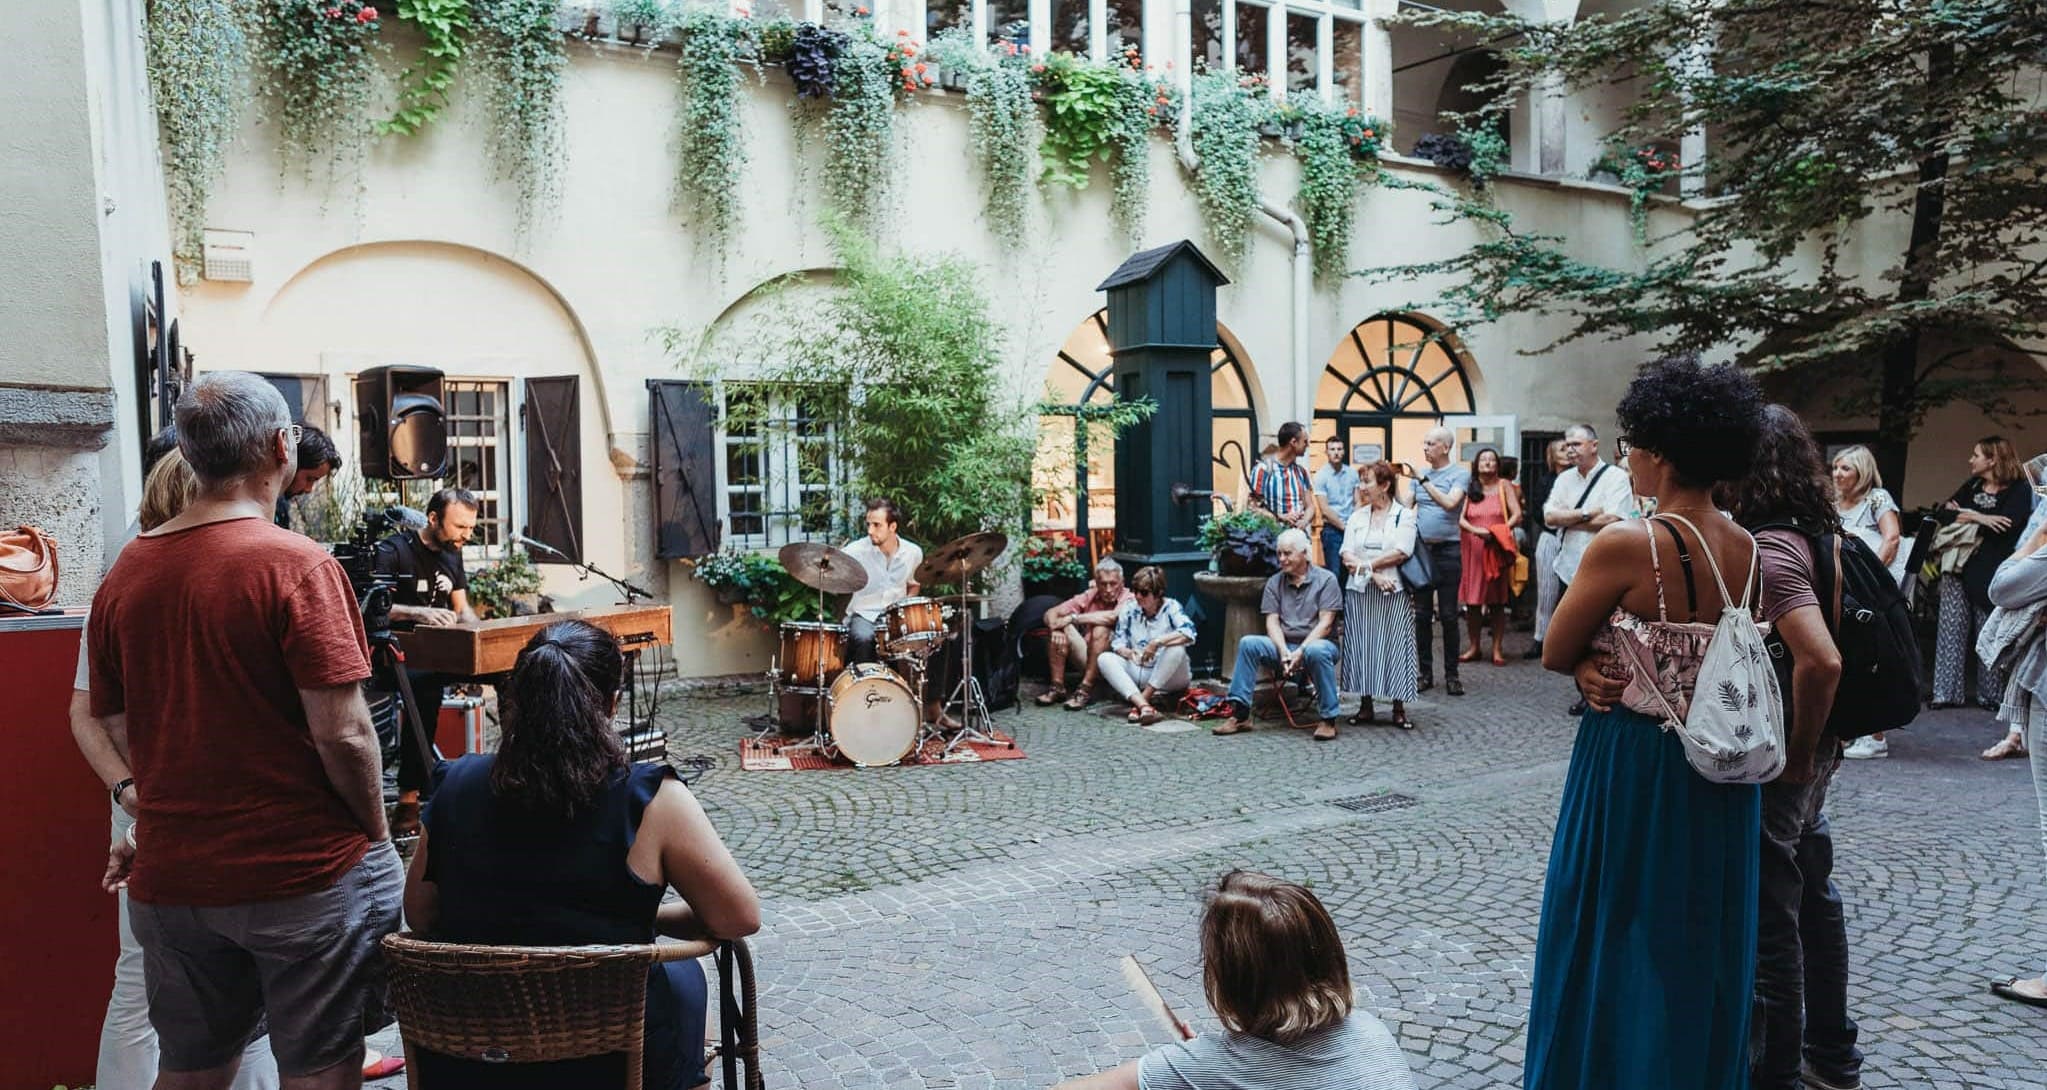 Musikevent in Klagenfurter Innenhof im Rahmen des Kultursommers Klagenfurt